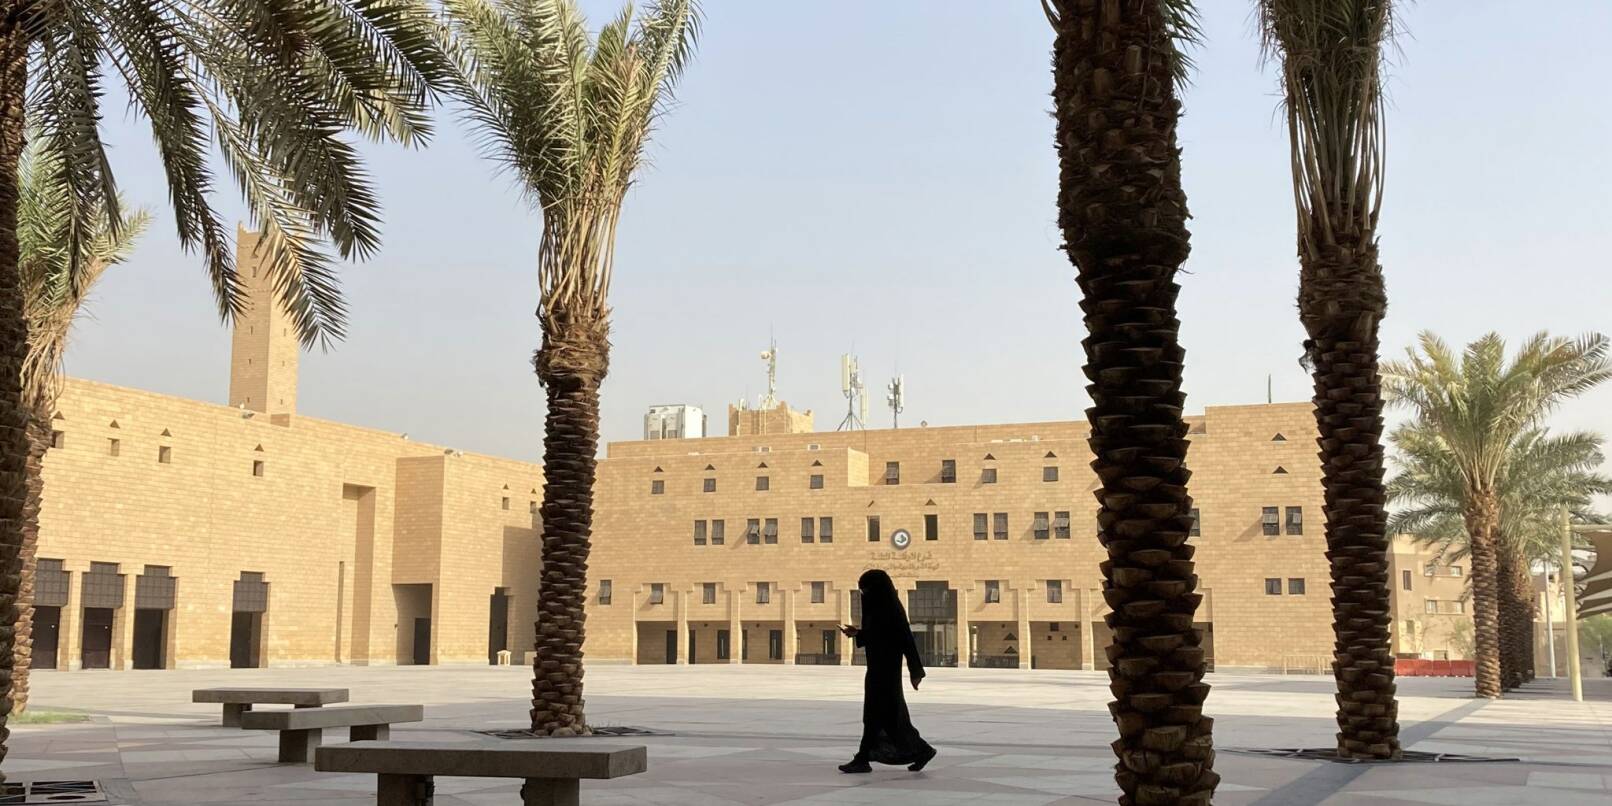 Eine verschleierte Frau in der saudischen Hauptstadt Riad. Saudi-Arabien - im WEF-Bericht über die Gleichstellung der Geschlechter auf einem der unteren Plätze - übernimmt den Vorsitz in der UN-Kommission zur Frauenförderung.